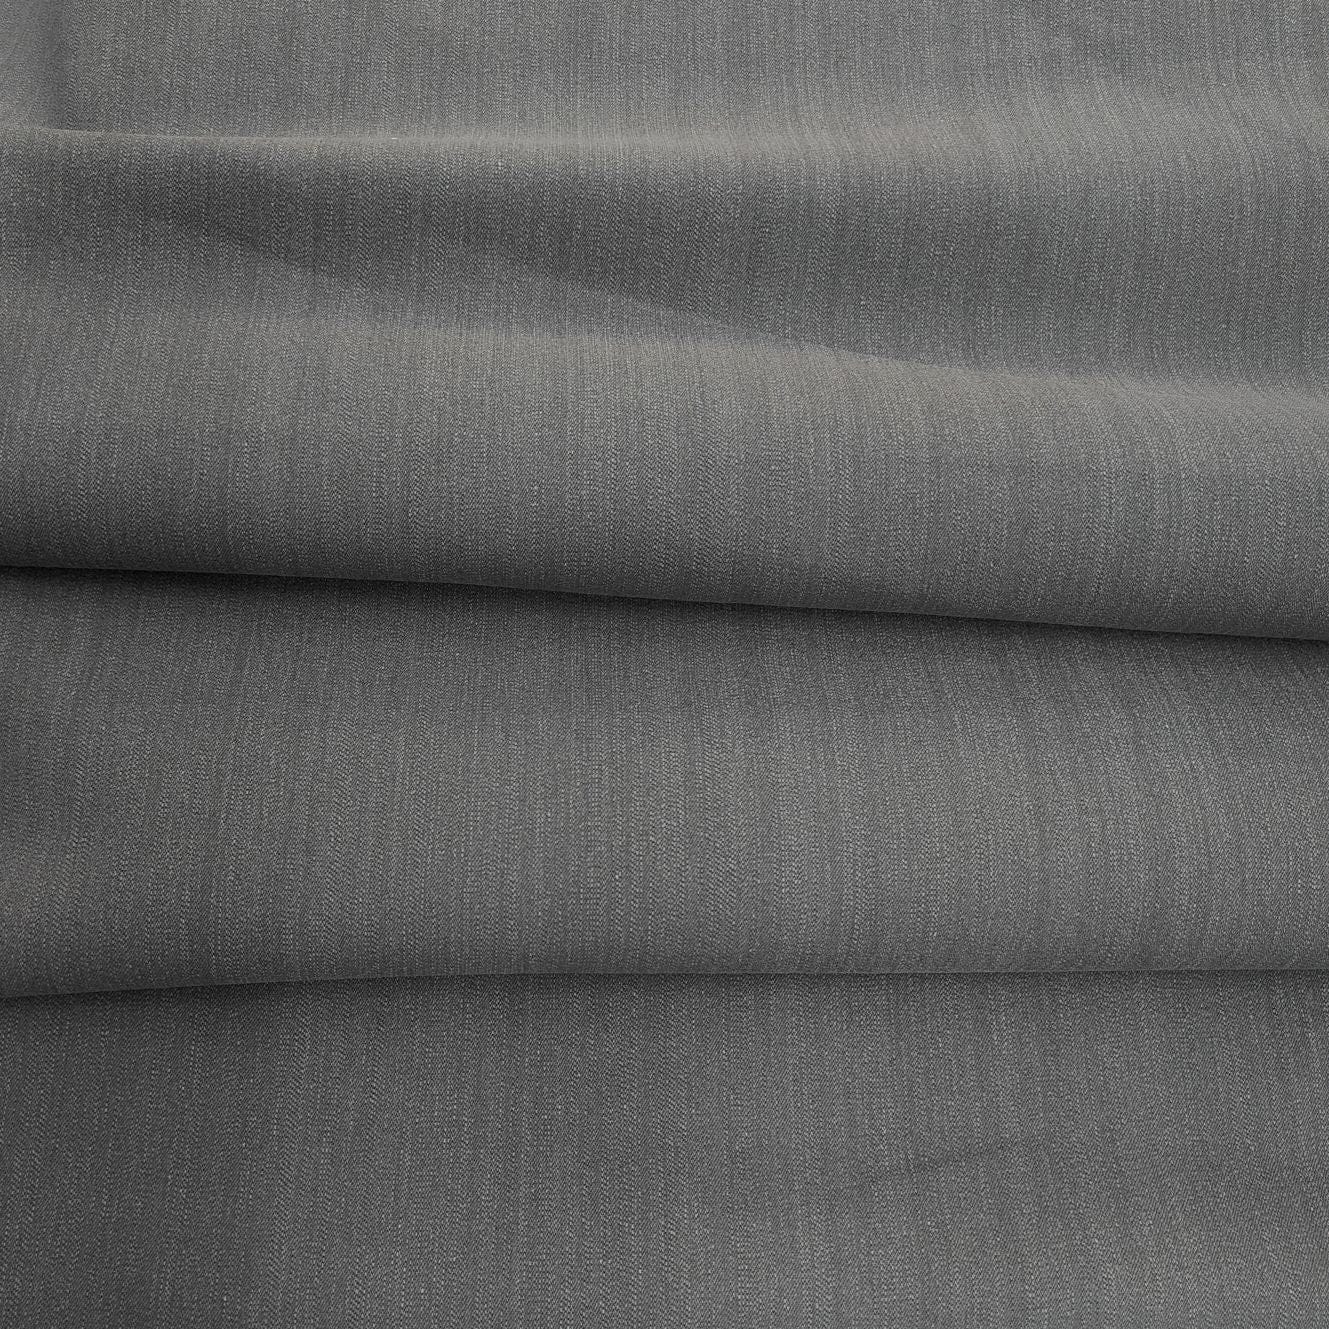 Arvind cotton denim stretchable jeans fabric colour Mica grey